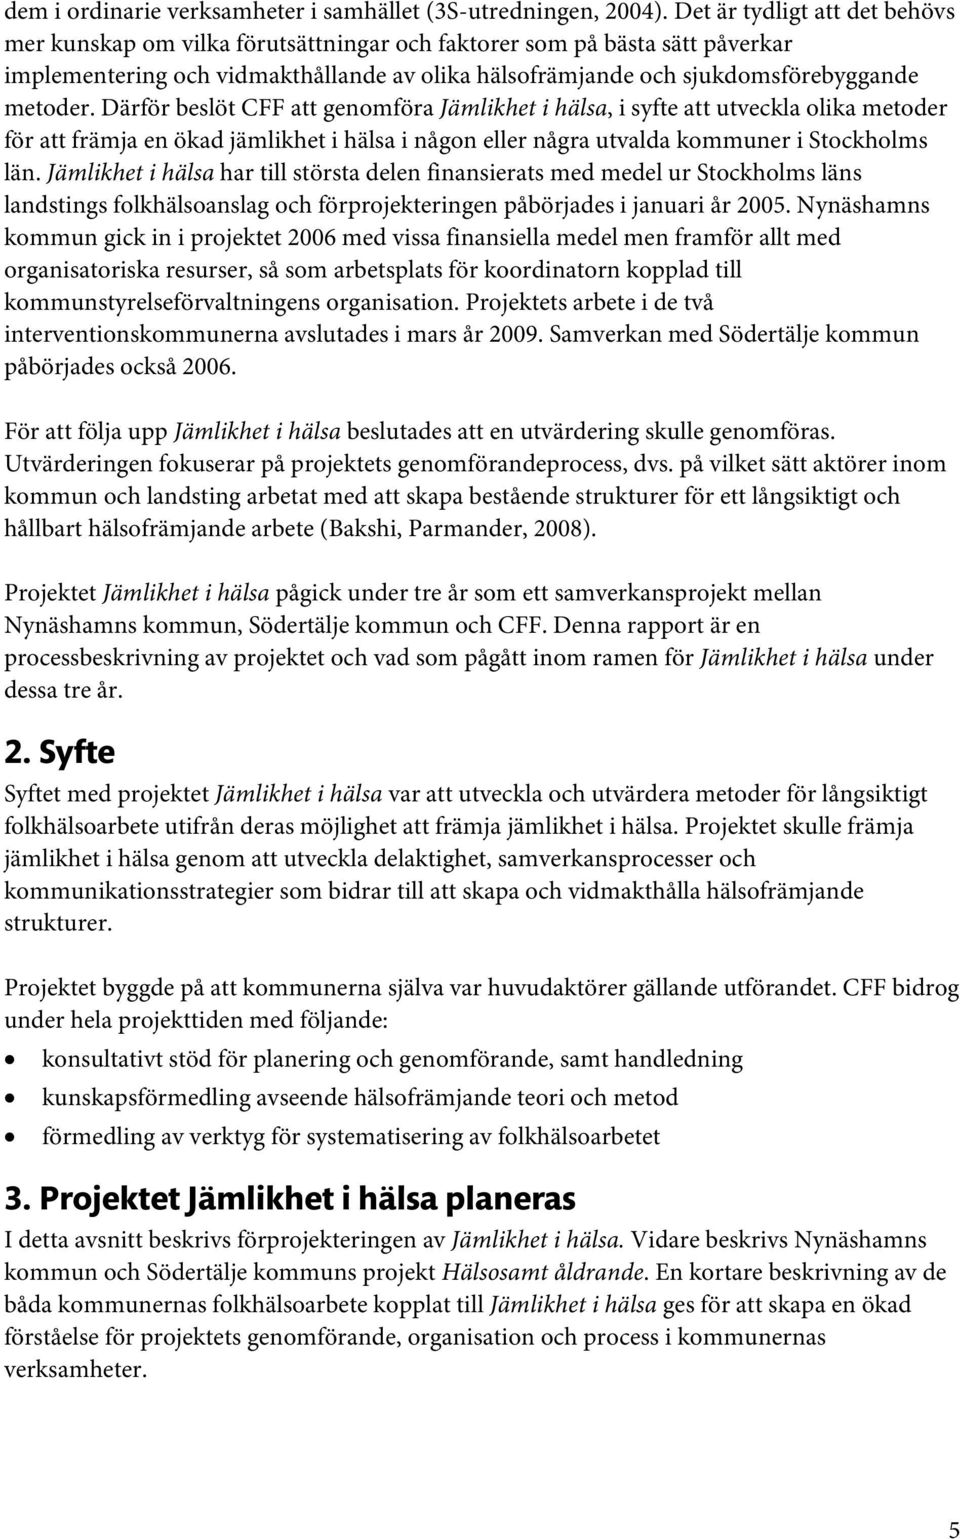 Därför beslöt CFF att genomföra Jämlikhet i hälsa, i syfte att utveckla olika metoder för att främja en ökad jämlikhet i hälsa i någon eller några utvalda kommuner i Stockholms län.